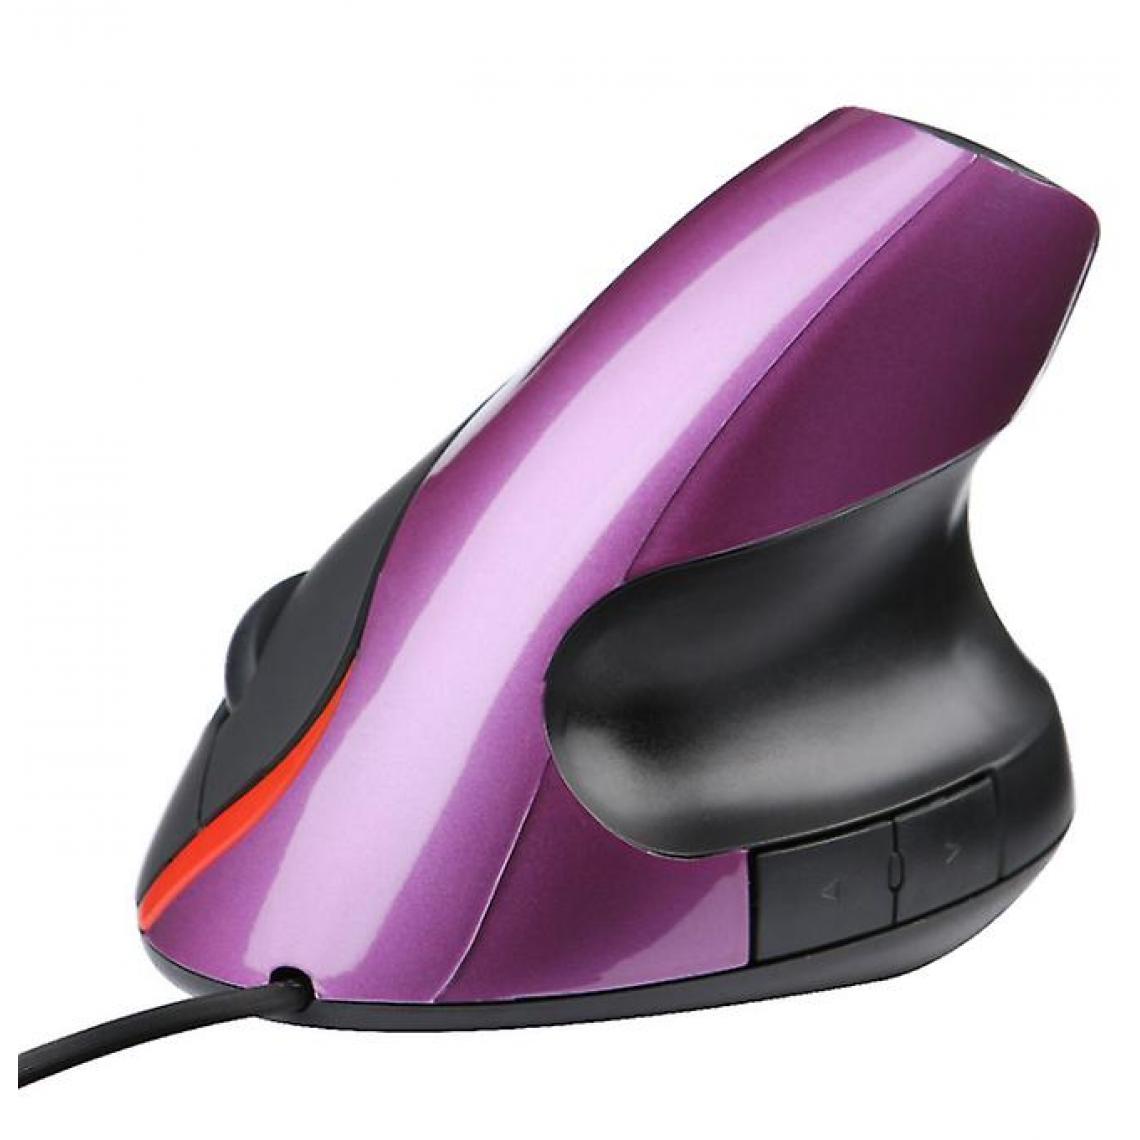 Universal - Souris verticale filaire 2.4G USB PC ordinateurs portables souris défilante optique, violet - Souris